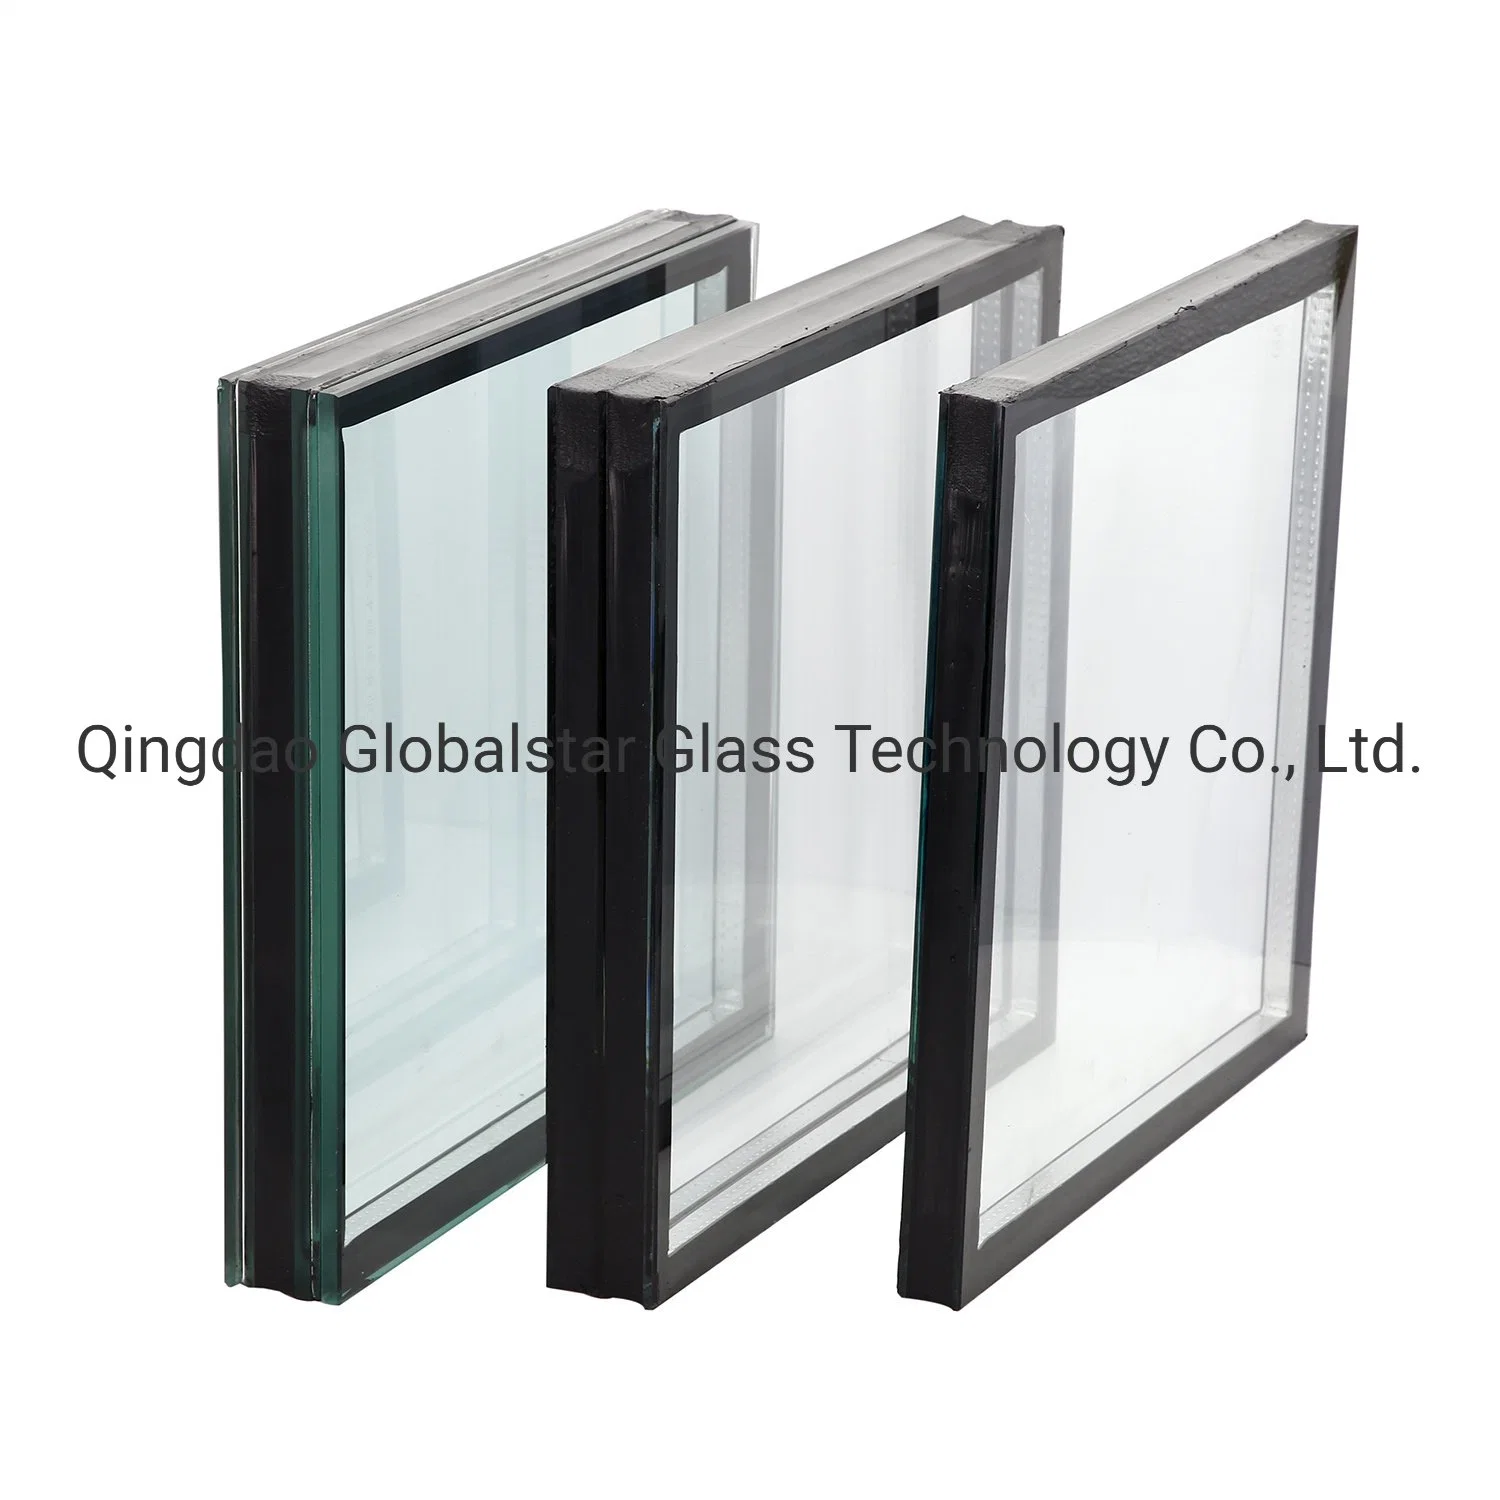 4 A+12+4мм двойные стекла на стекле/ изолированный стекла/ Стекло/ МГС стекла/ очистить стекло/ E/ Стекло закаленное стекло/закаленного стекла